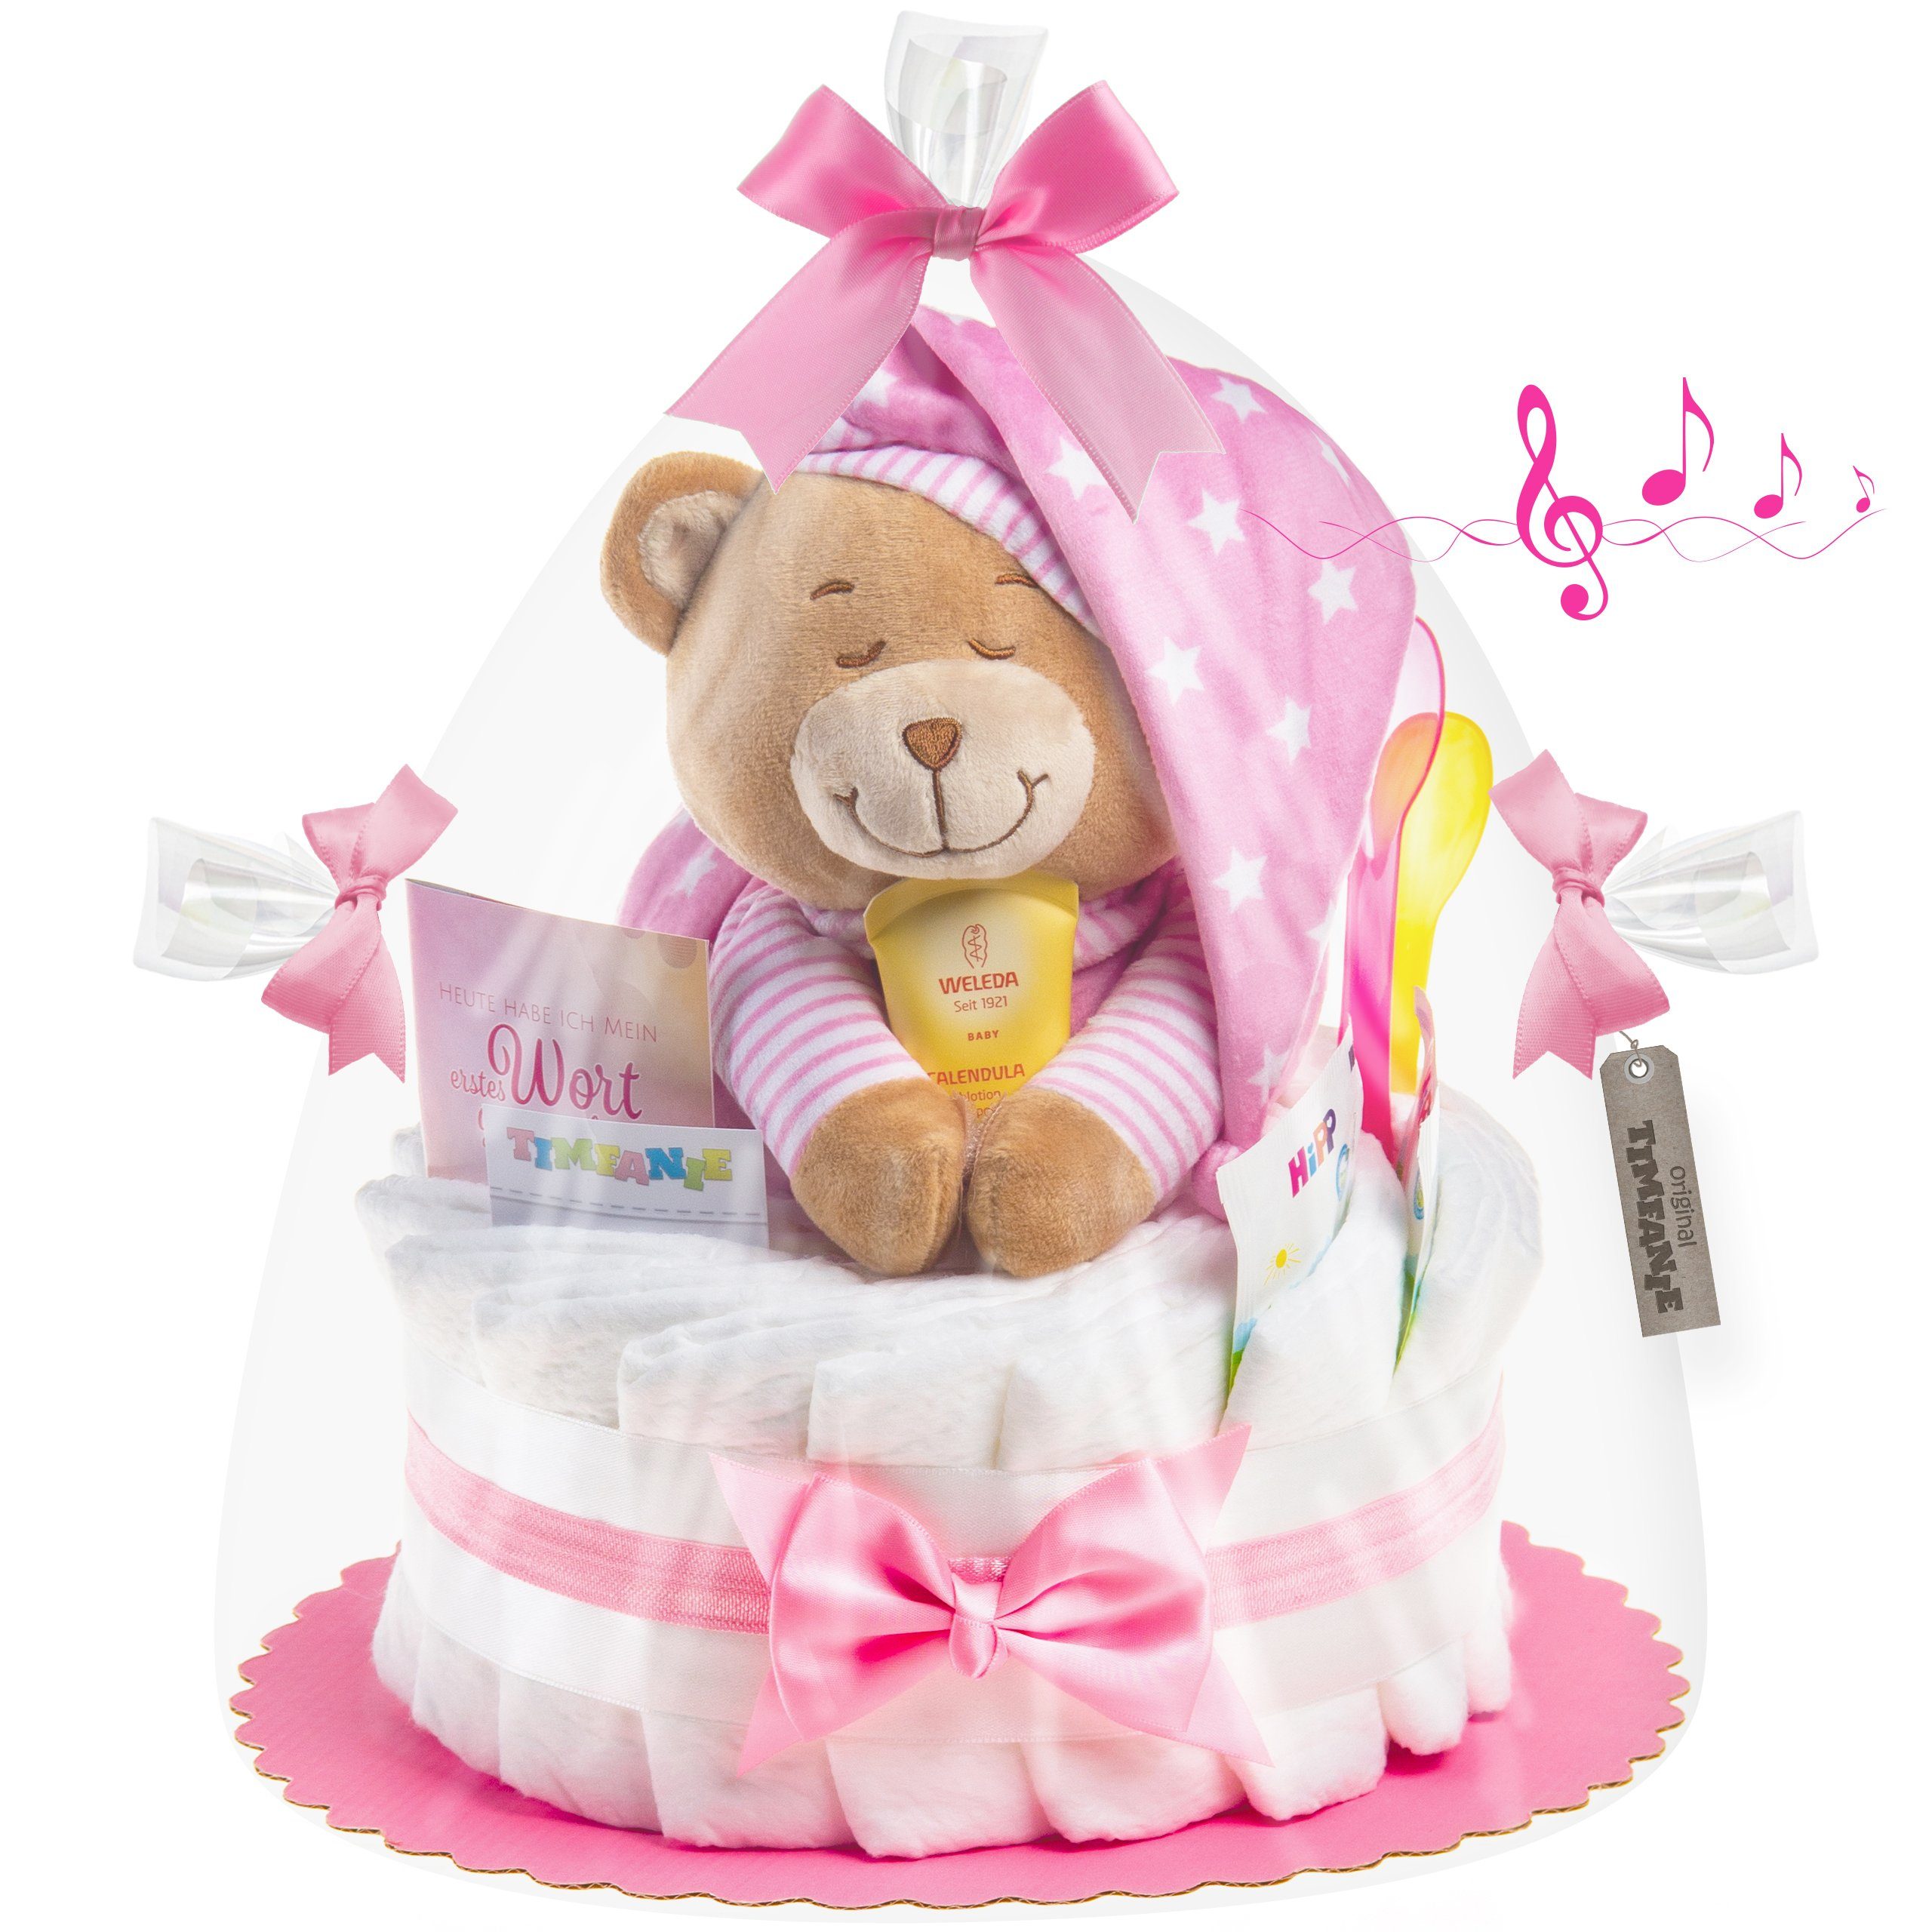 Timfanie Neugeborenen-Geschenkset Windeltorte, Spieluhr Schlafmütze, rosa, (rosa, 28-tlg)